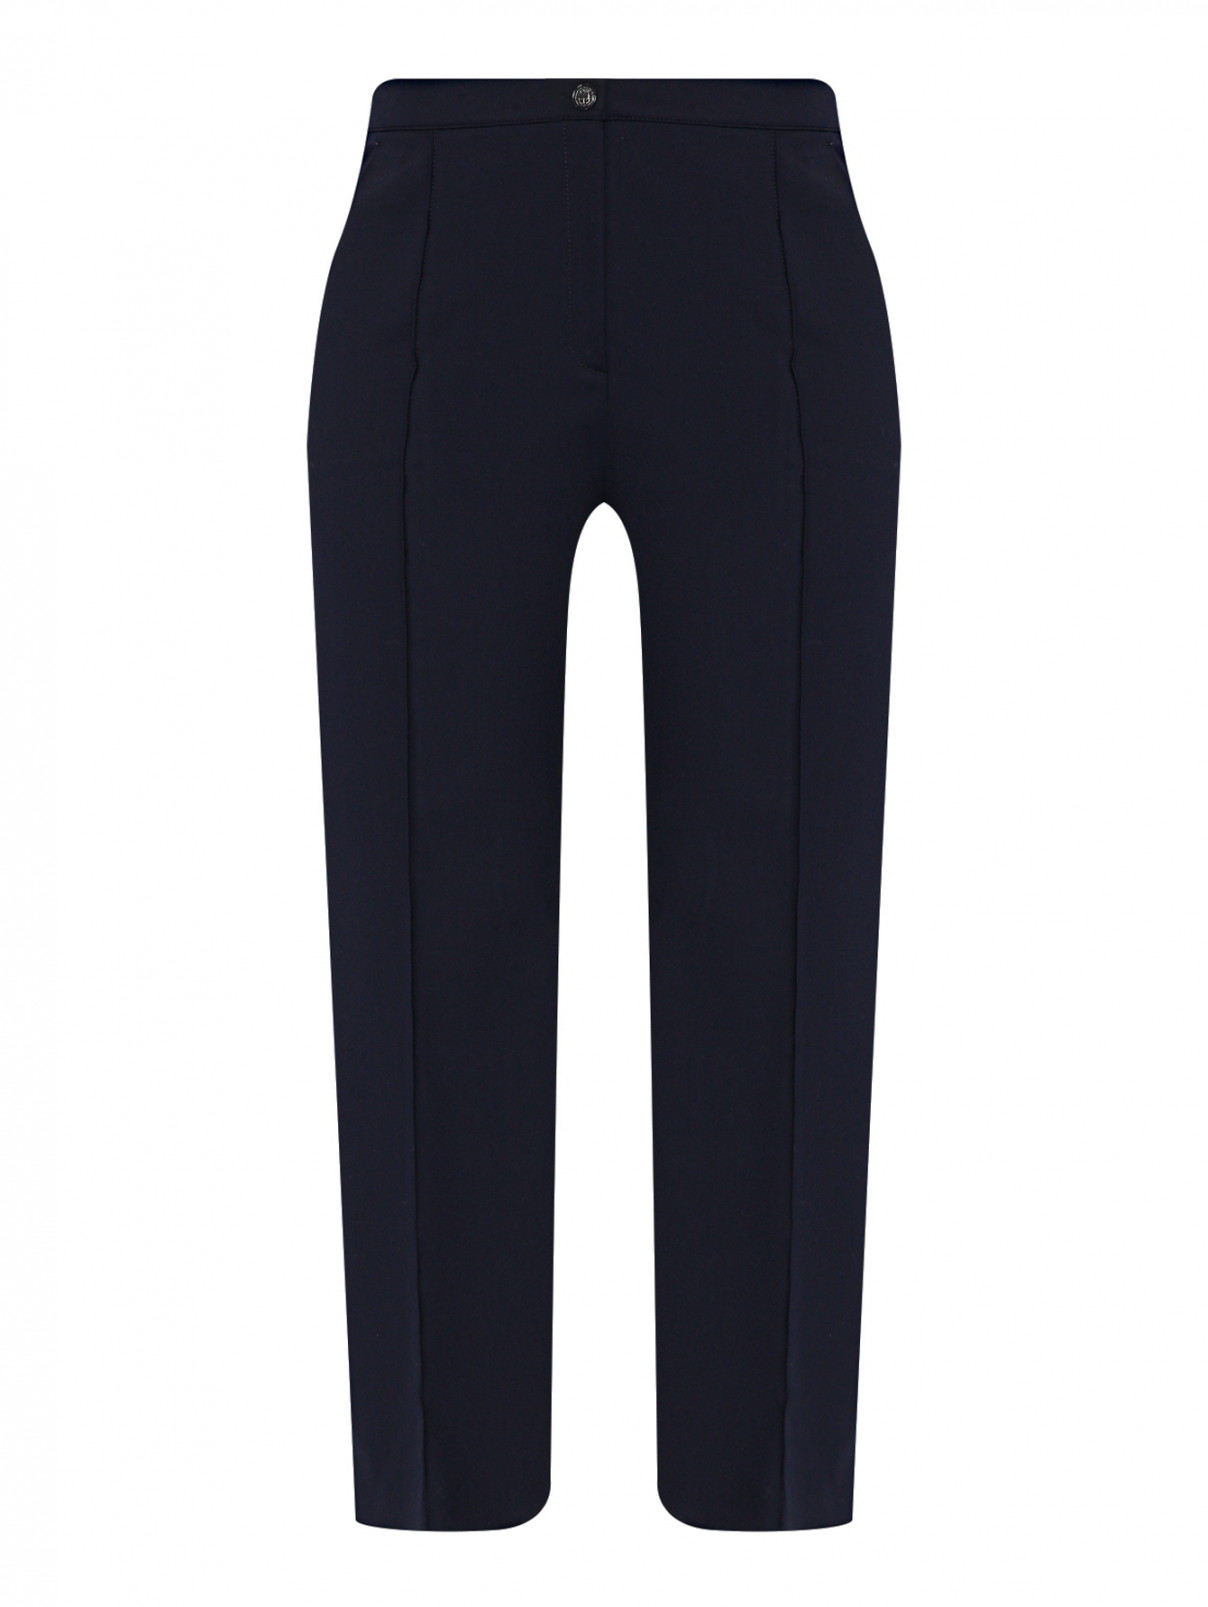 Трикотажные брюки с карманами Marina Rinaldi  –  Общий вид  – Цвет:  Синий